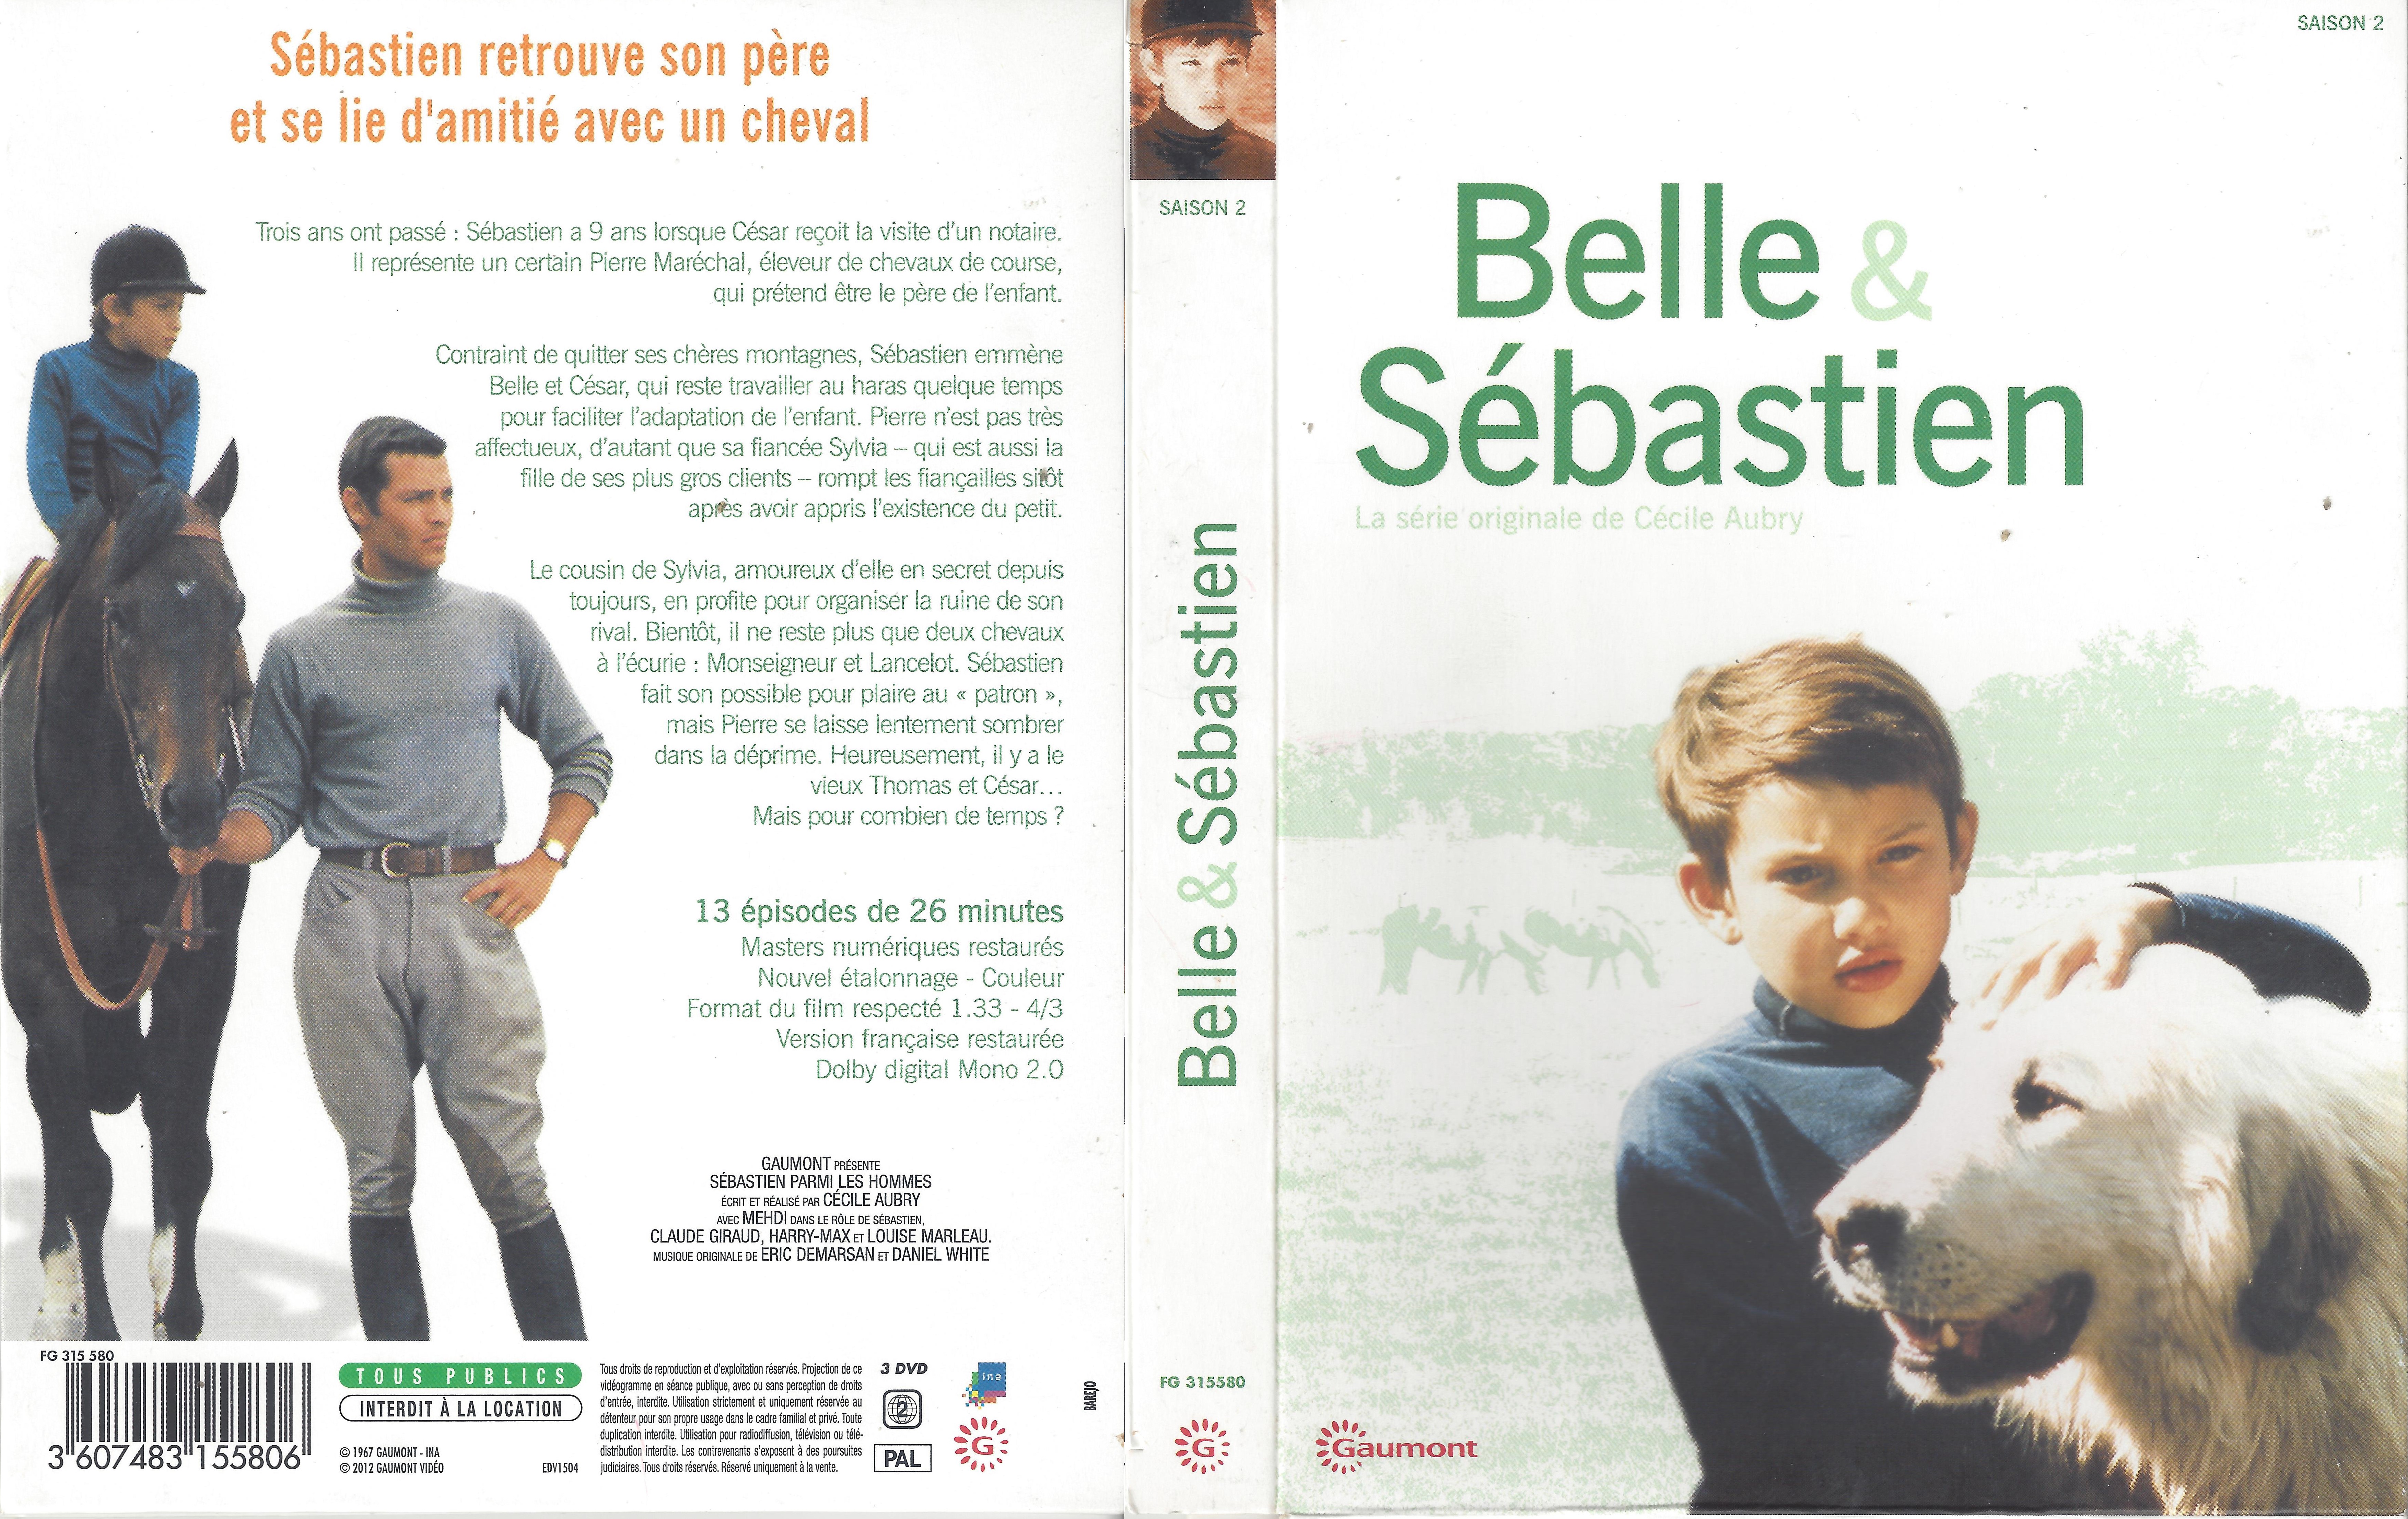 Jaquette DVD Belle et Sebastien saison 2 COFFRET